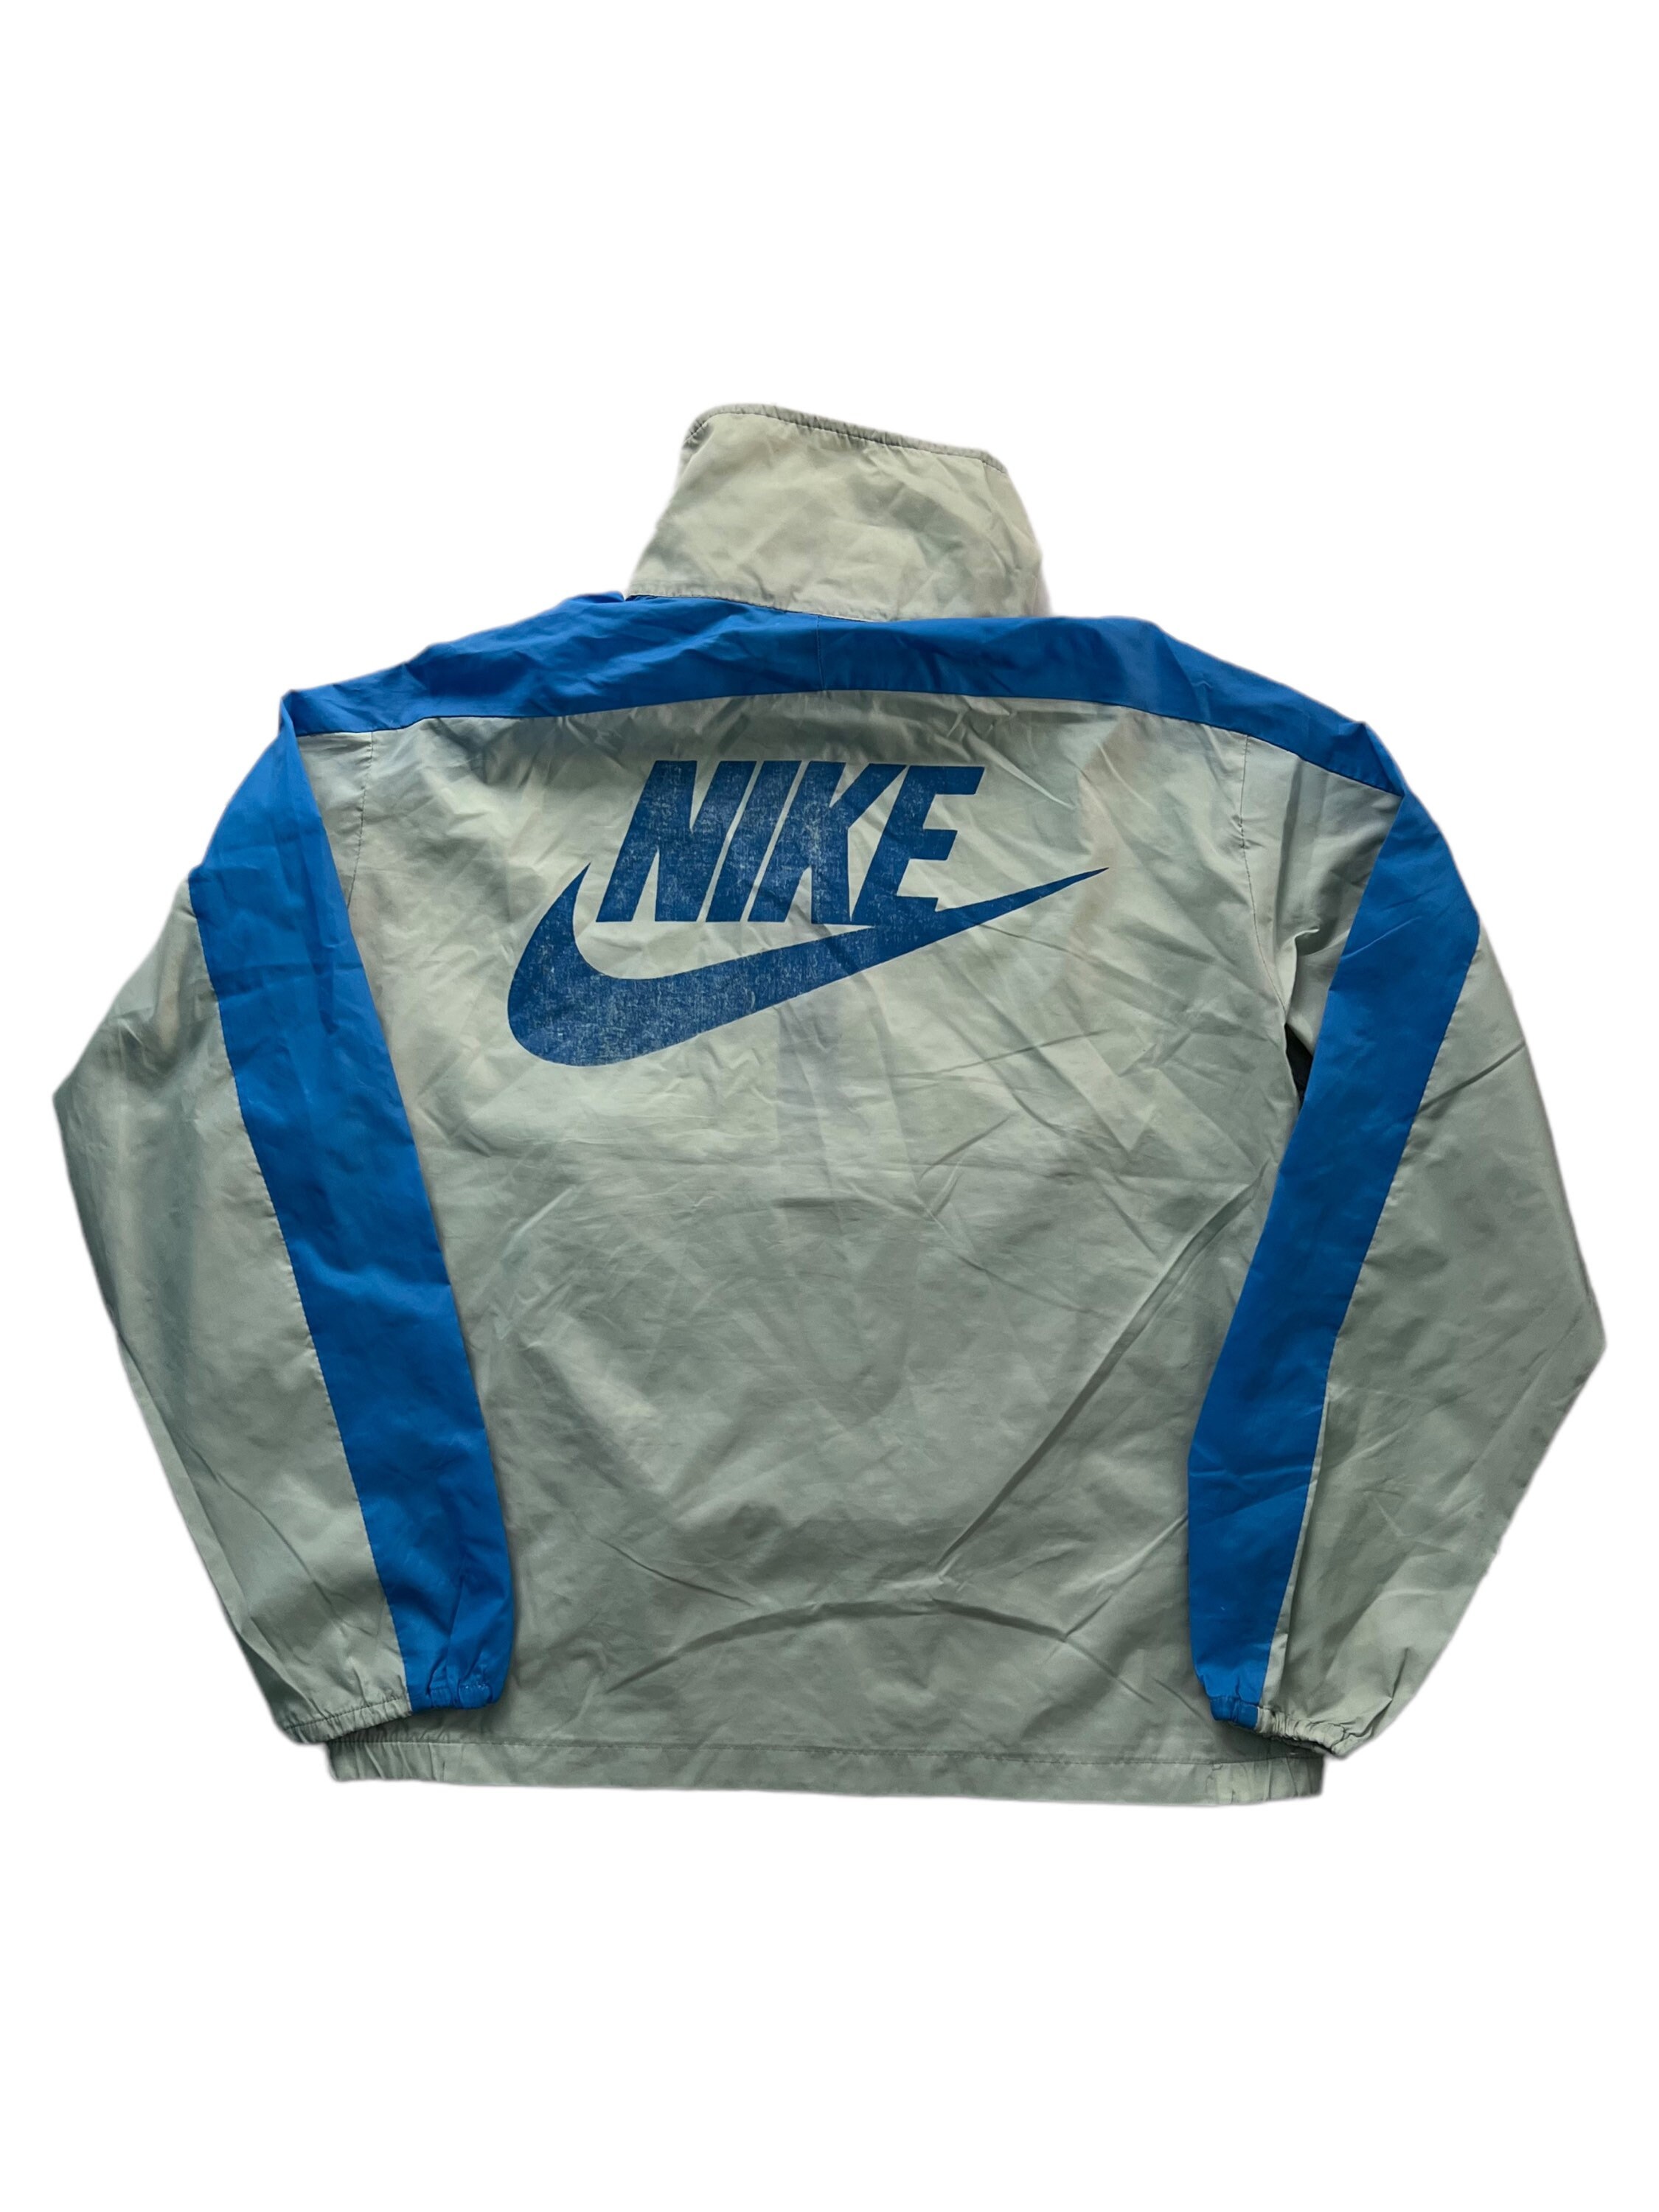 Very Rare Vintage Jacket Nike Packable 70s Windbreaker Nylon Etsy Israel